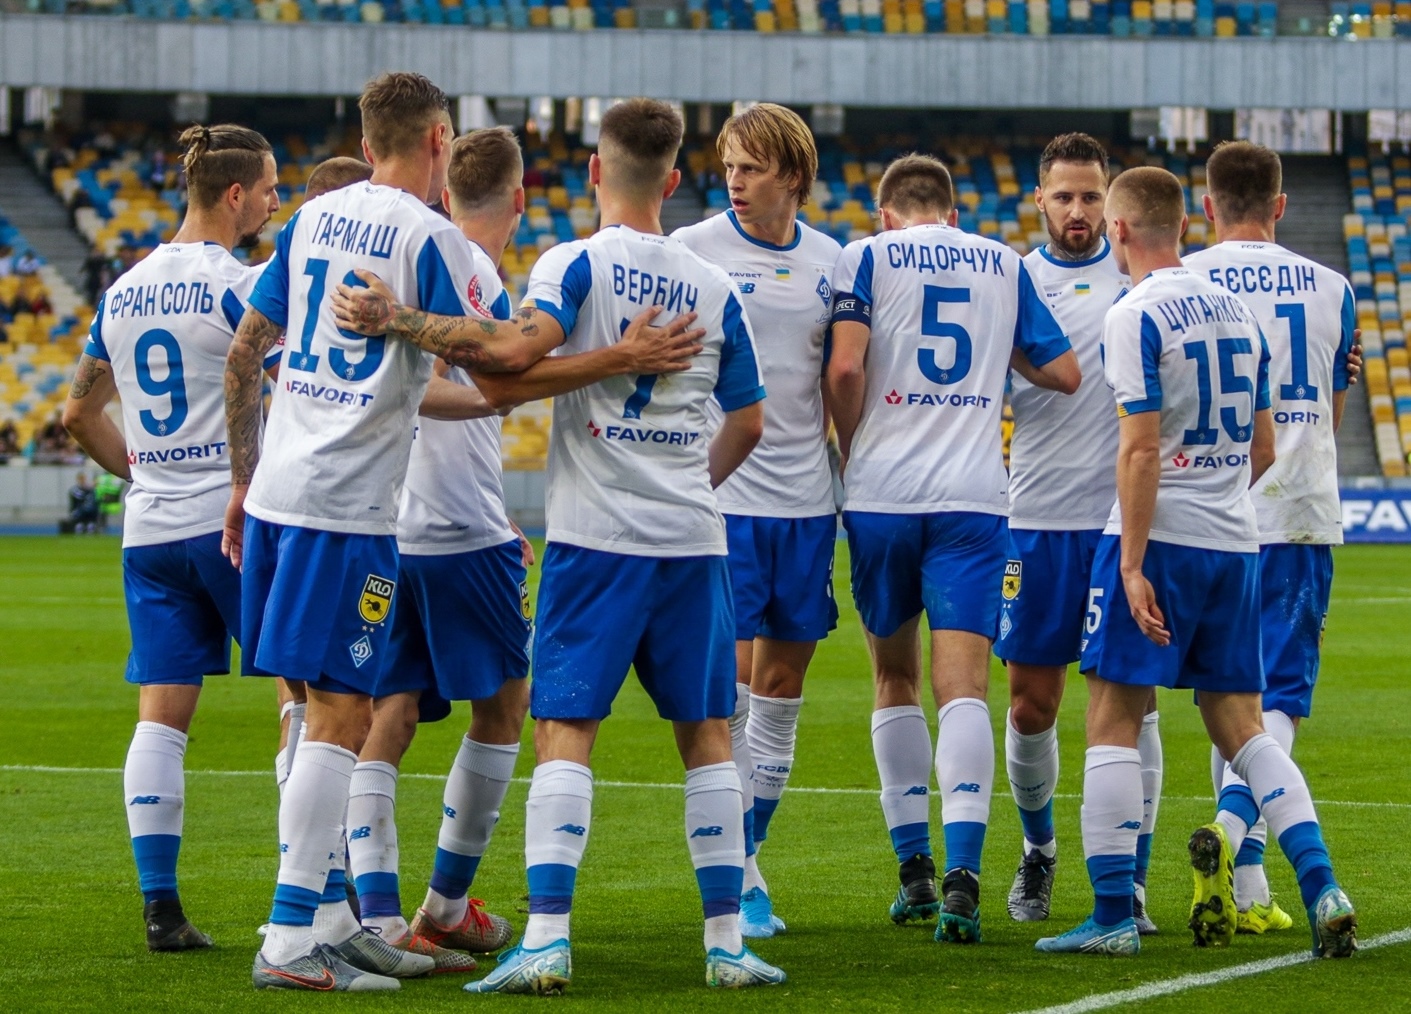 Ucraina, la Dinamo Kiev giocherà amichevoli con i migliori club europei per raccogliere fondi per il paese